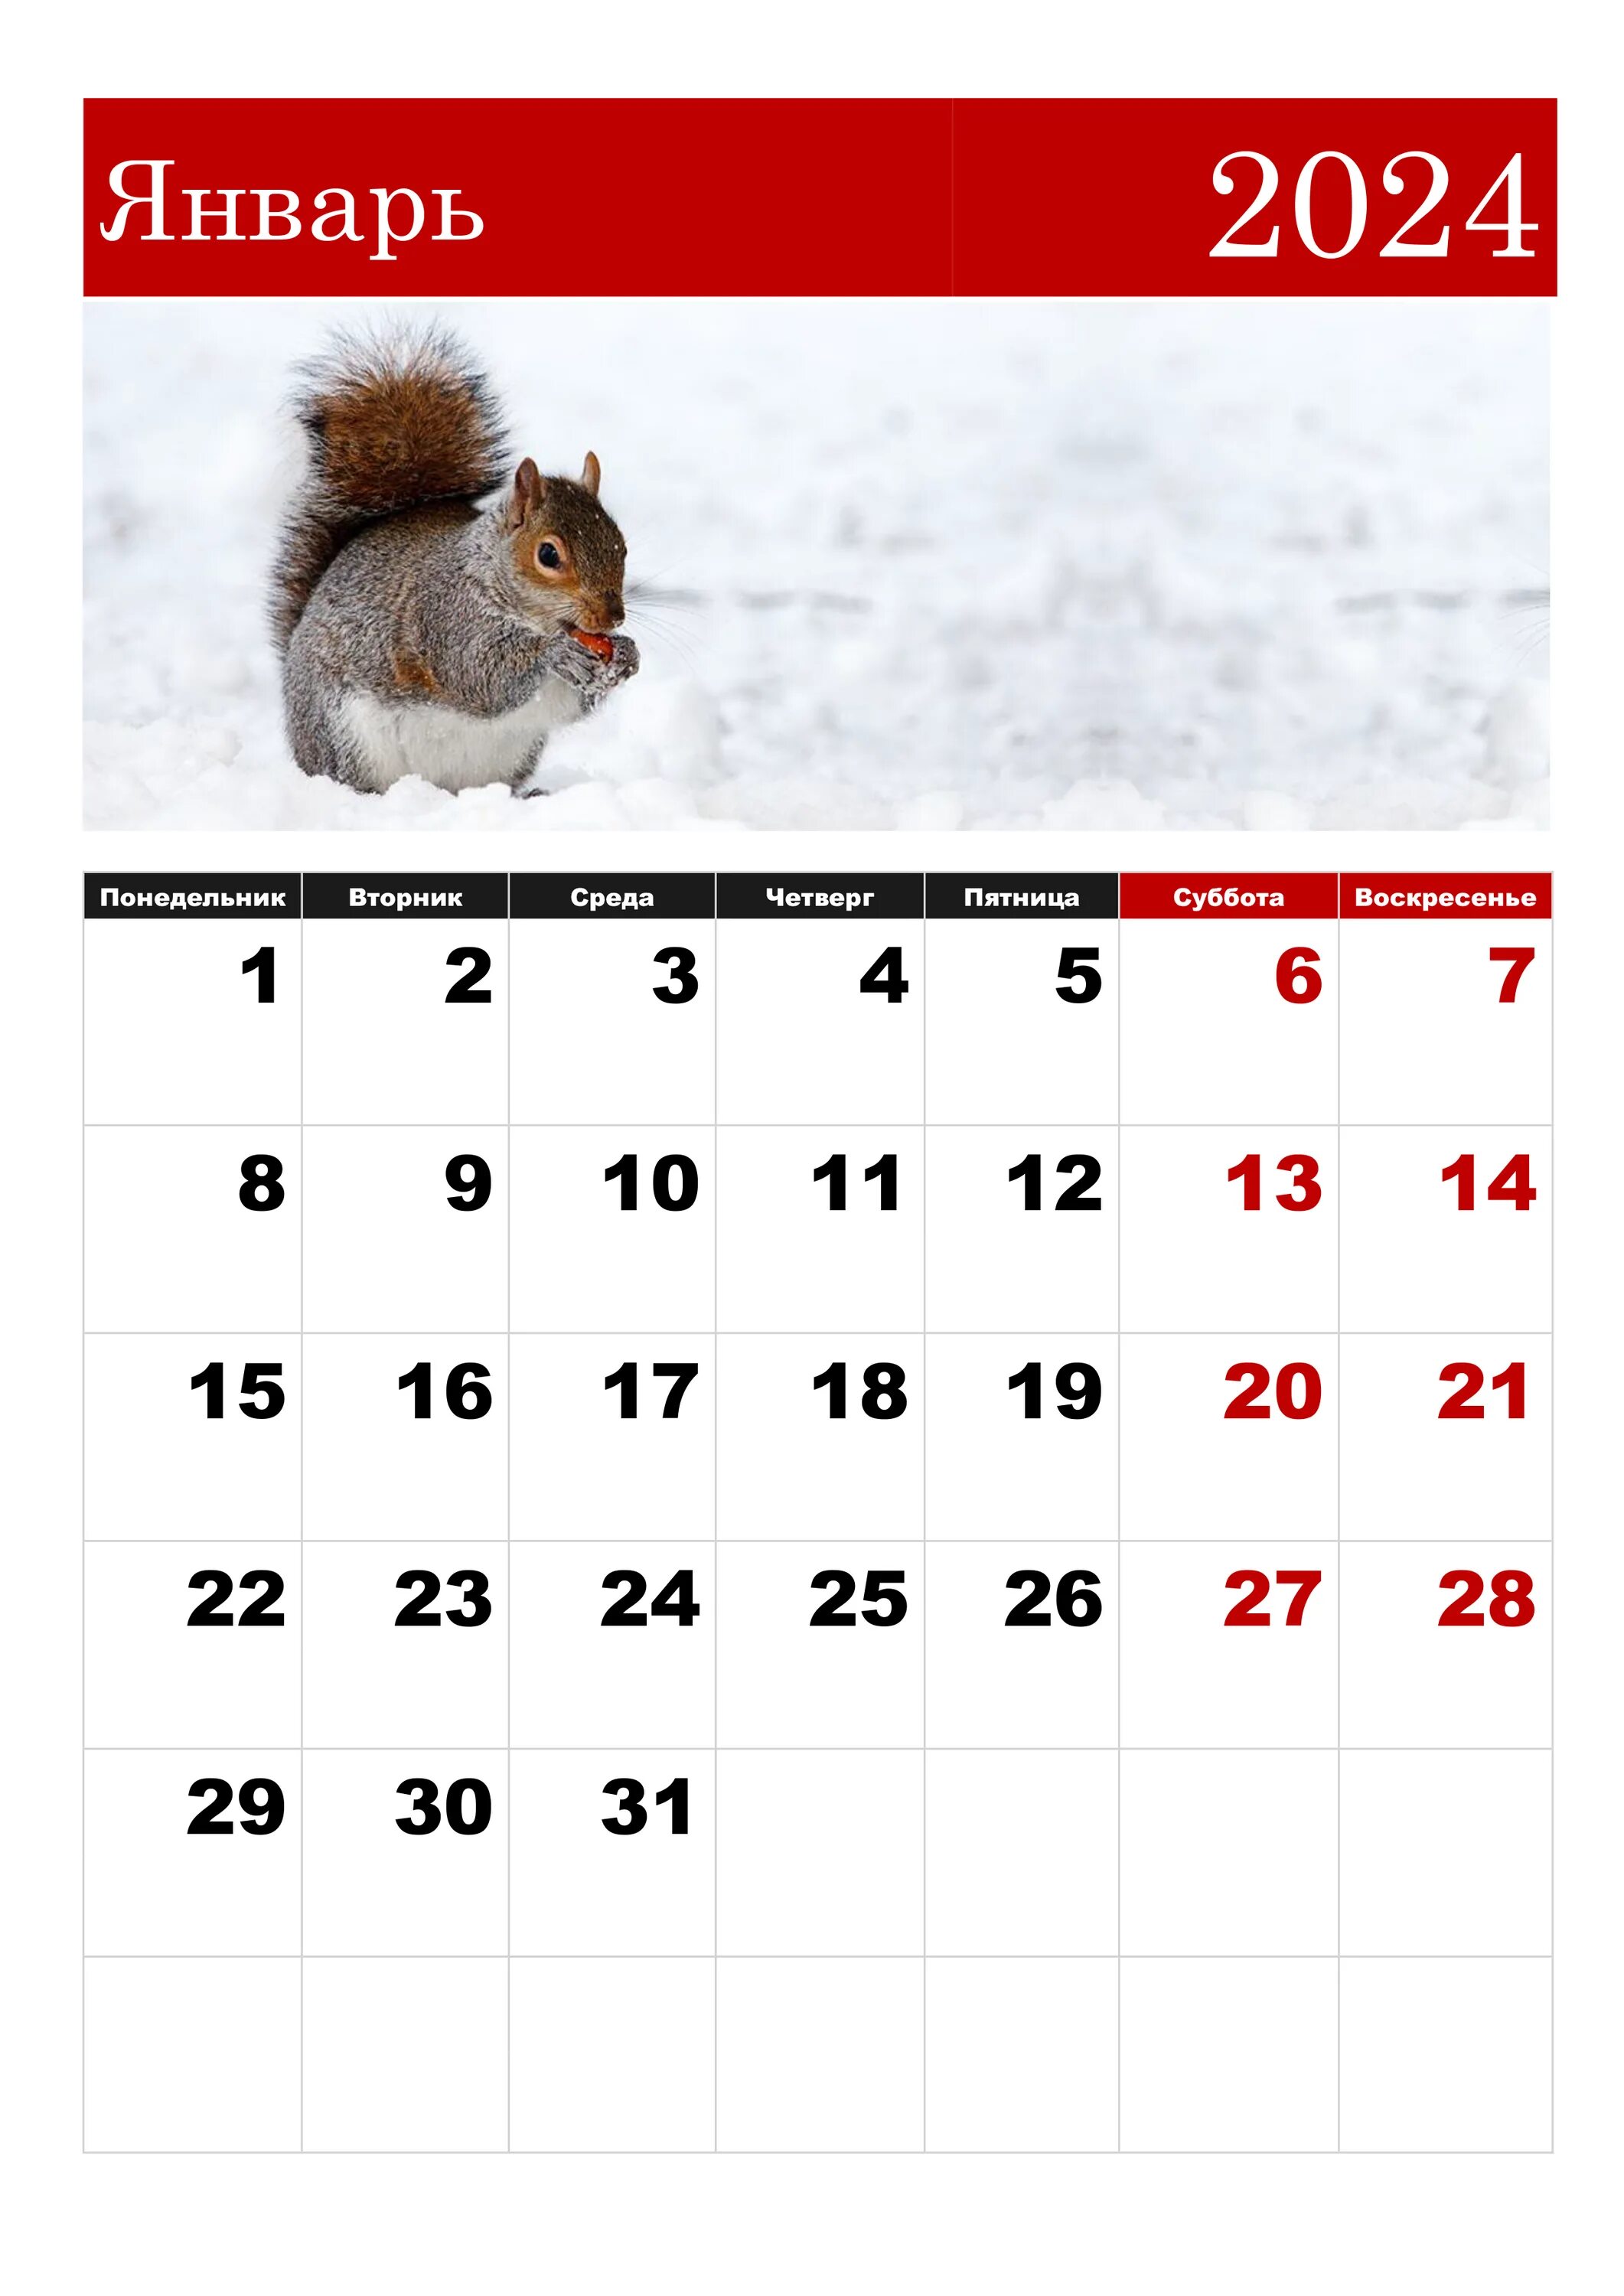 Первые дни января 2024 года. Календарная январь 2024. ЯНВАРЬРЬ 2024. Календарь январь. Календарь на январь 2024 года.